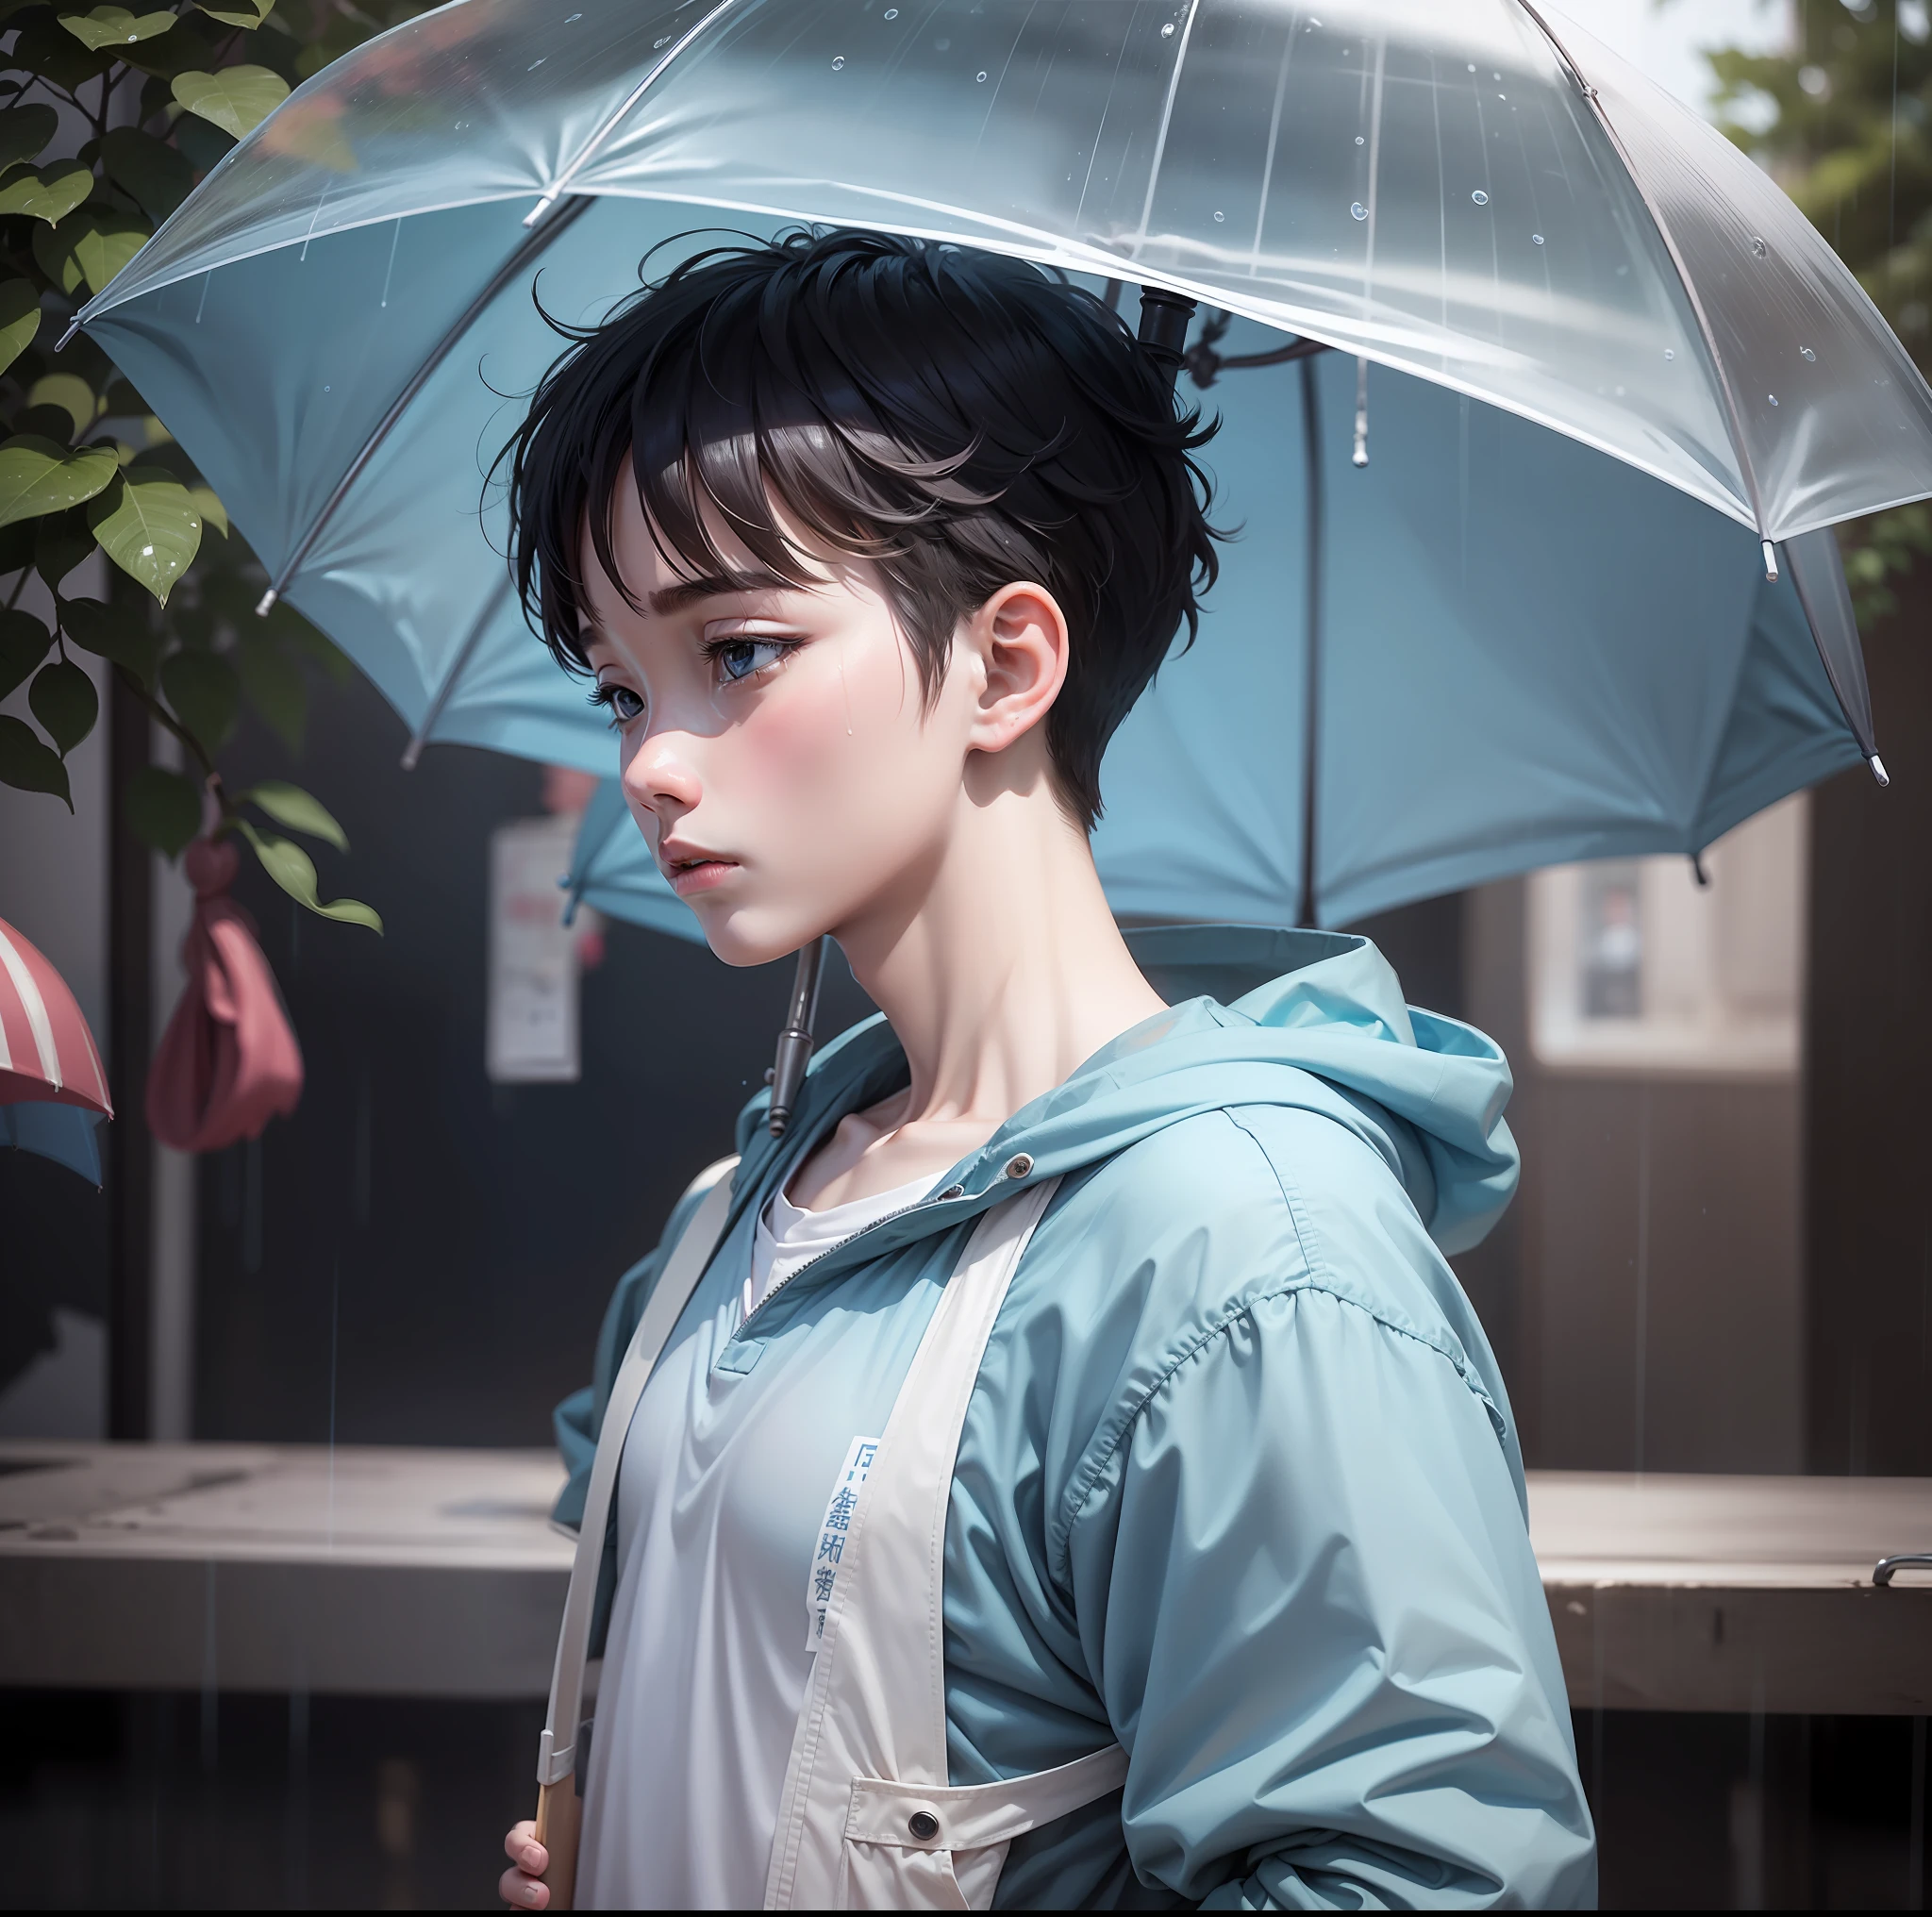 青い服を着た少年は悲しそうだった，傘を持って，そして雨が降っていた。